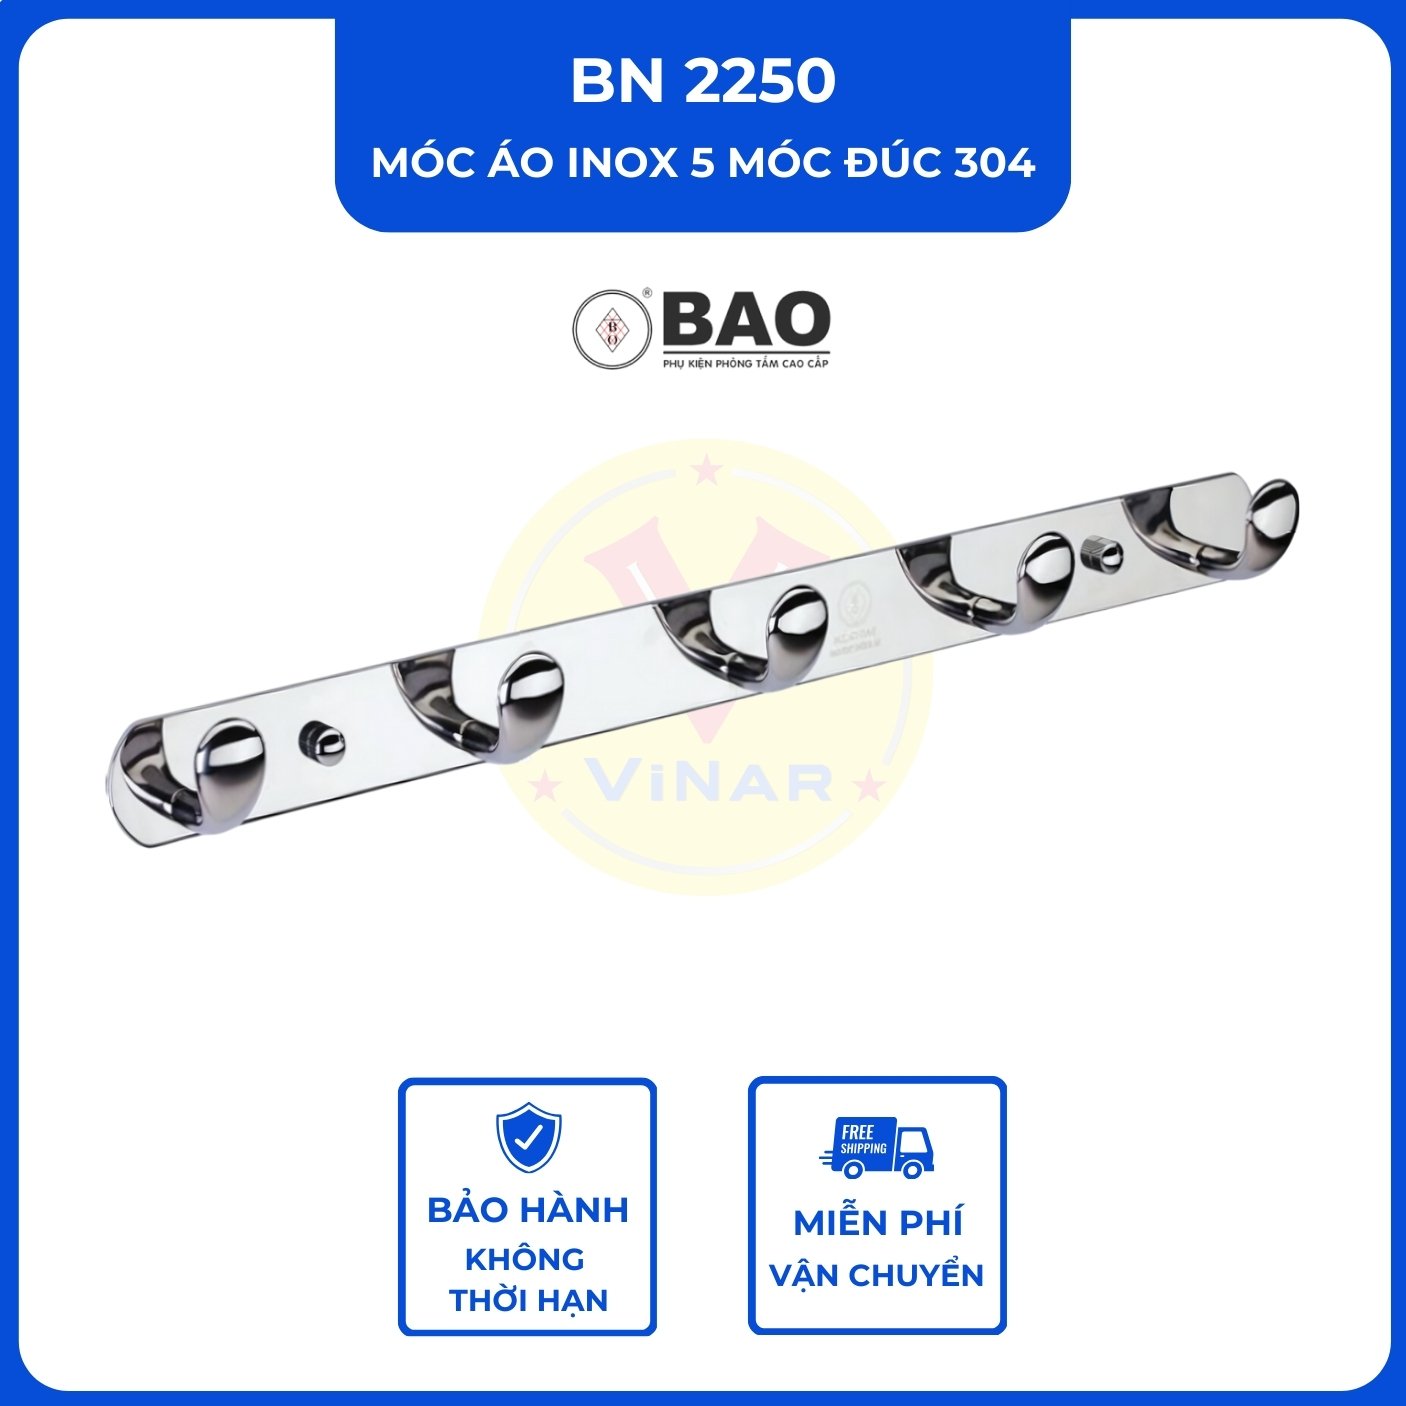 moc-ao-inox-5-moc-duc-304-BN2250